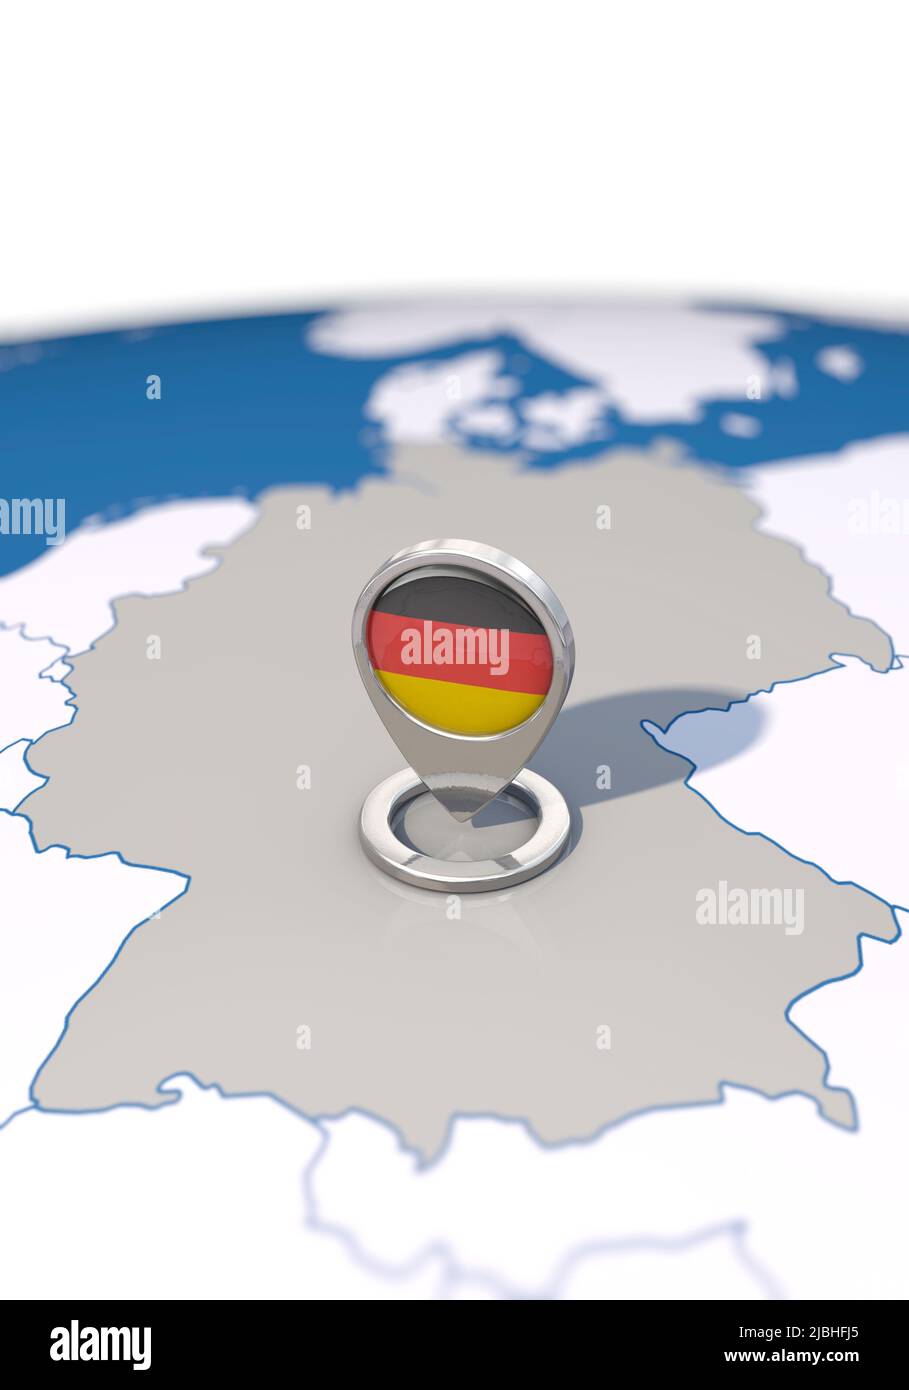 Zielland Deutschland, Hochformat Stockfoto